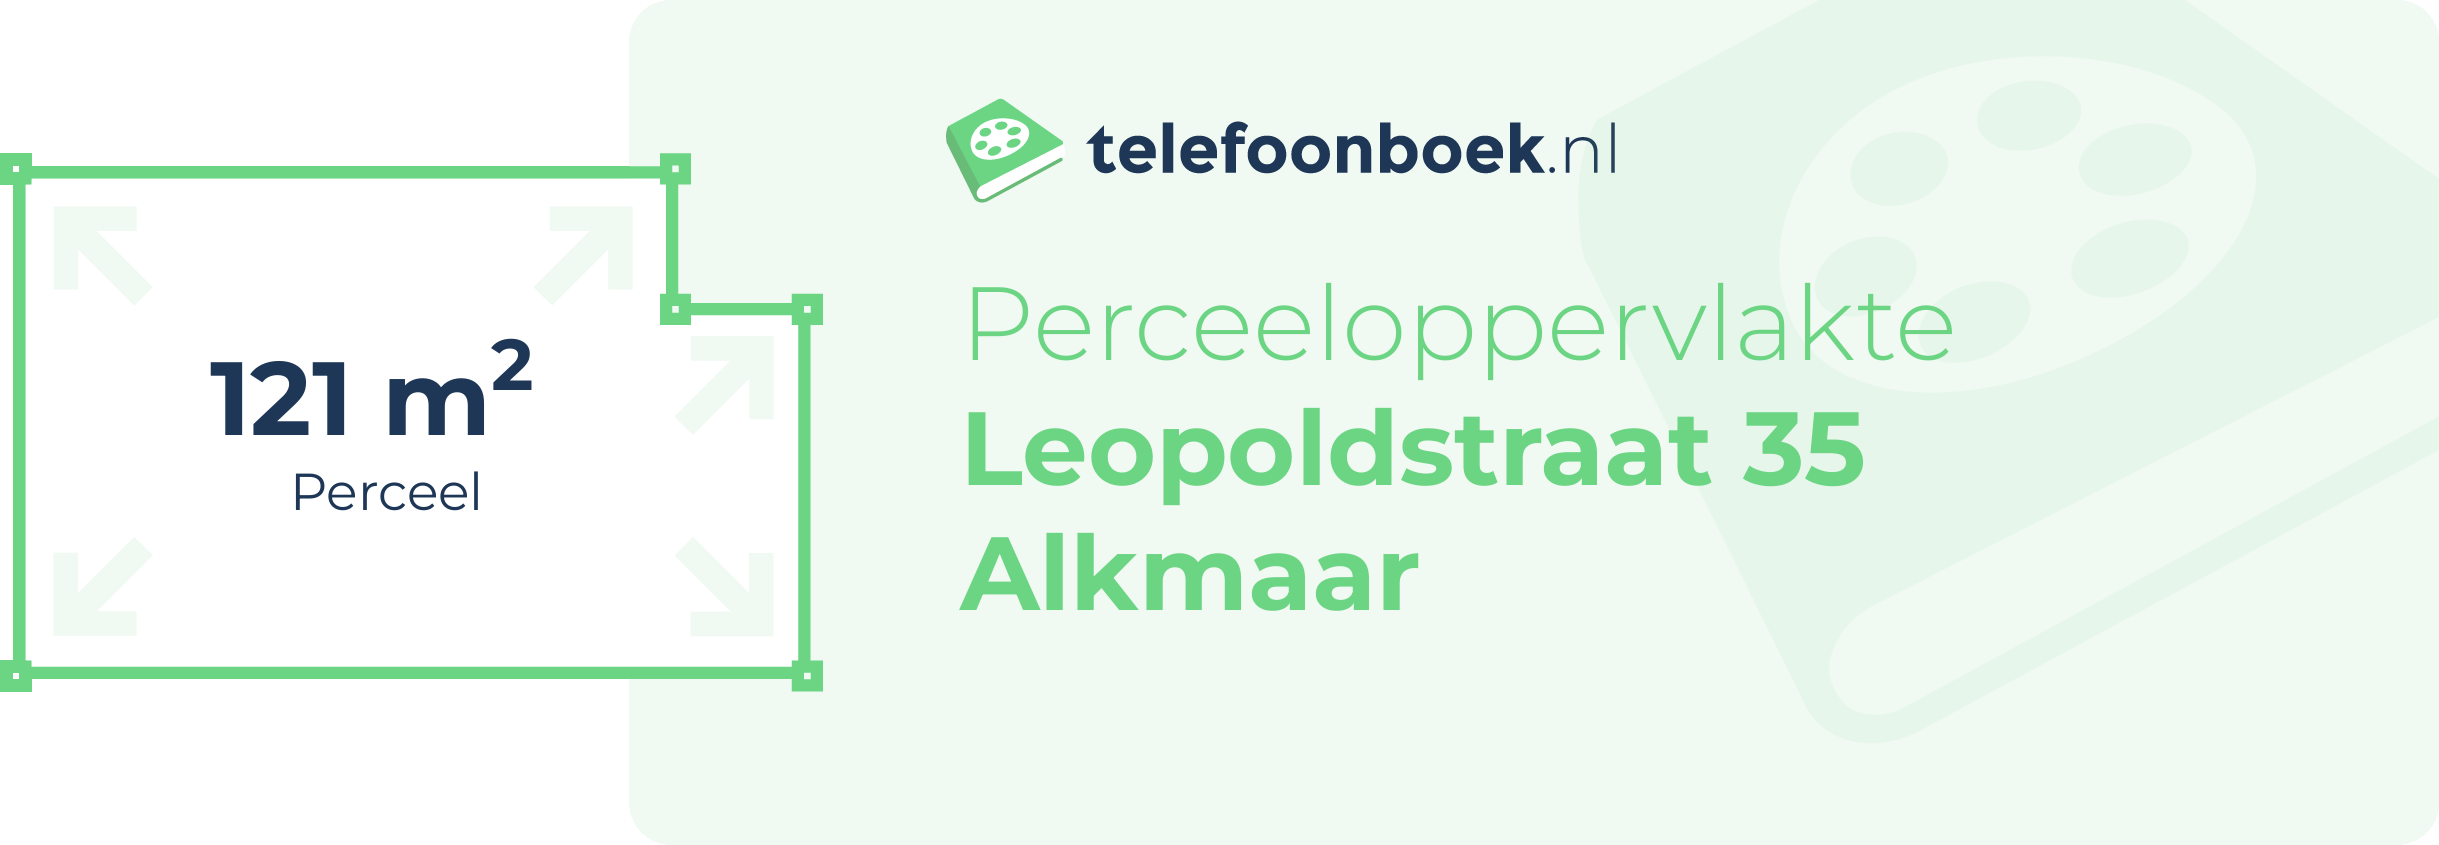 Perceeloppervlakte Leopoldstraat 35 Alkmaar